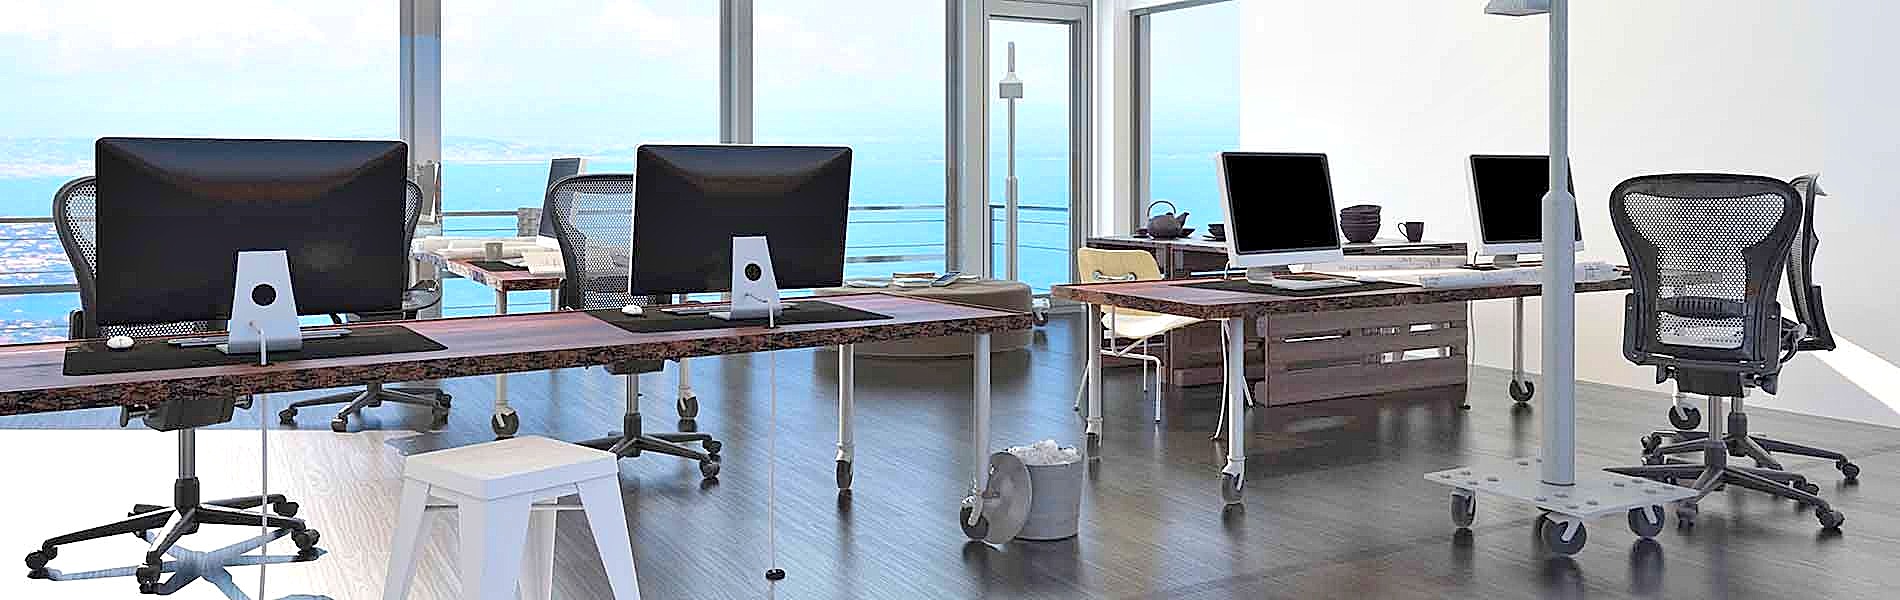 limpieza de despachos y oficinas